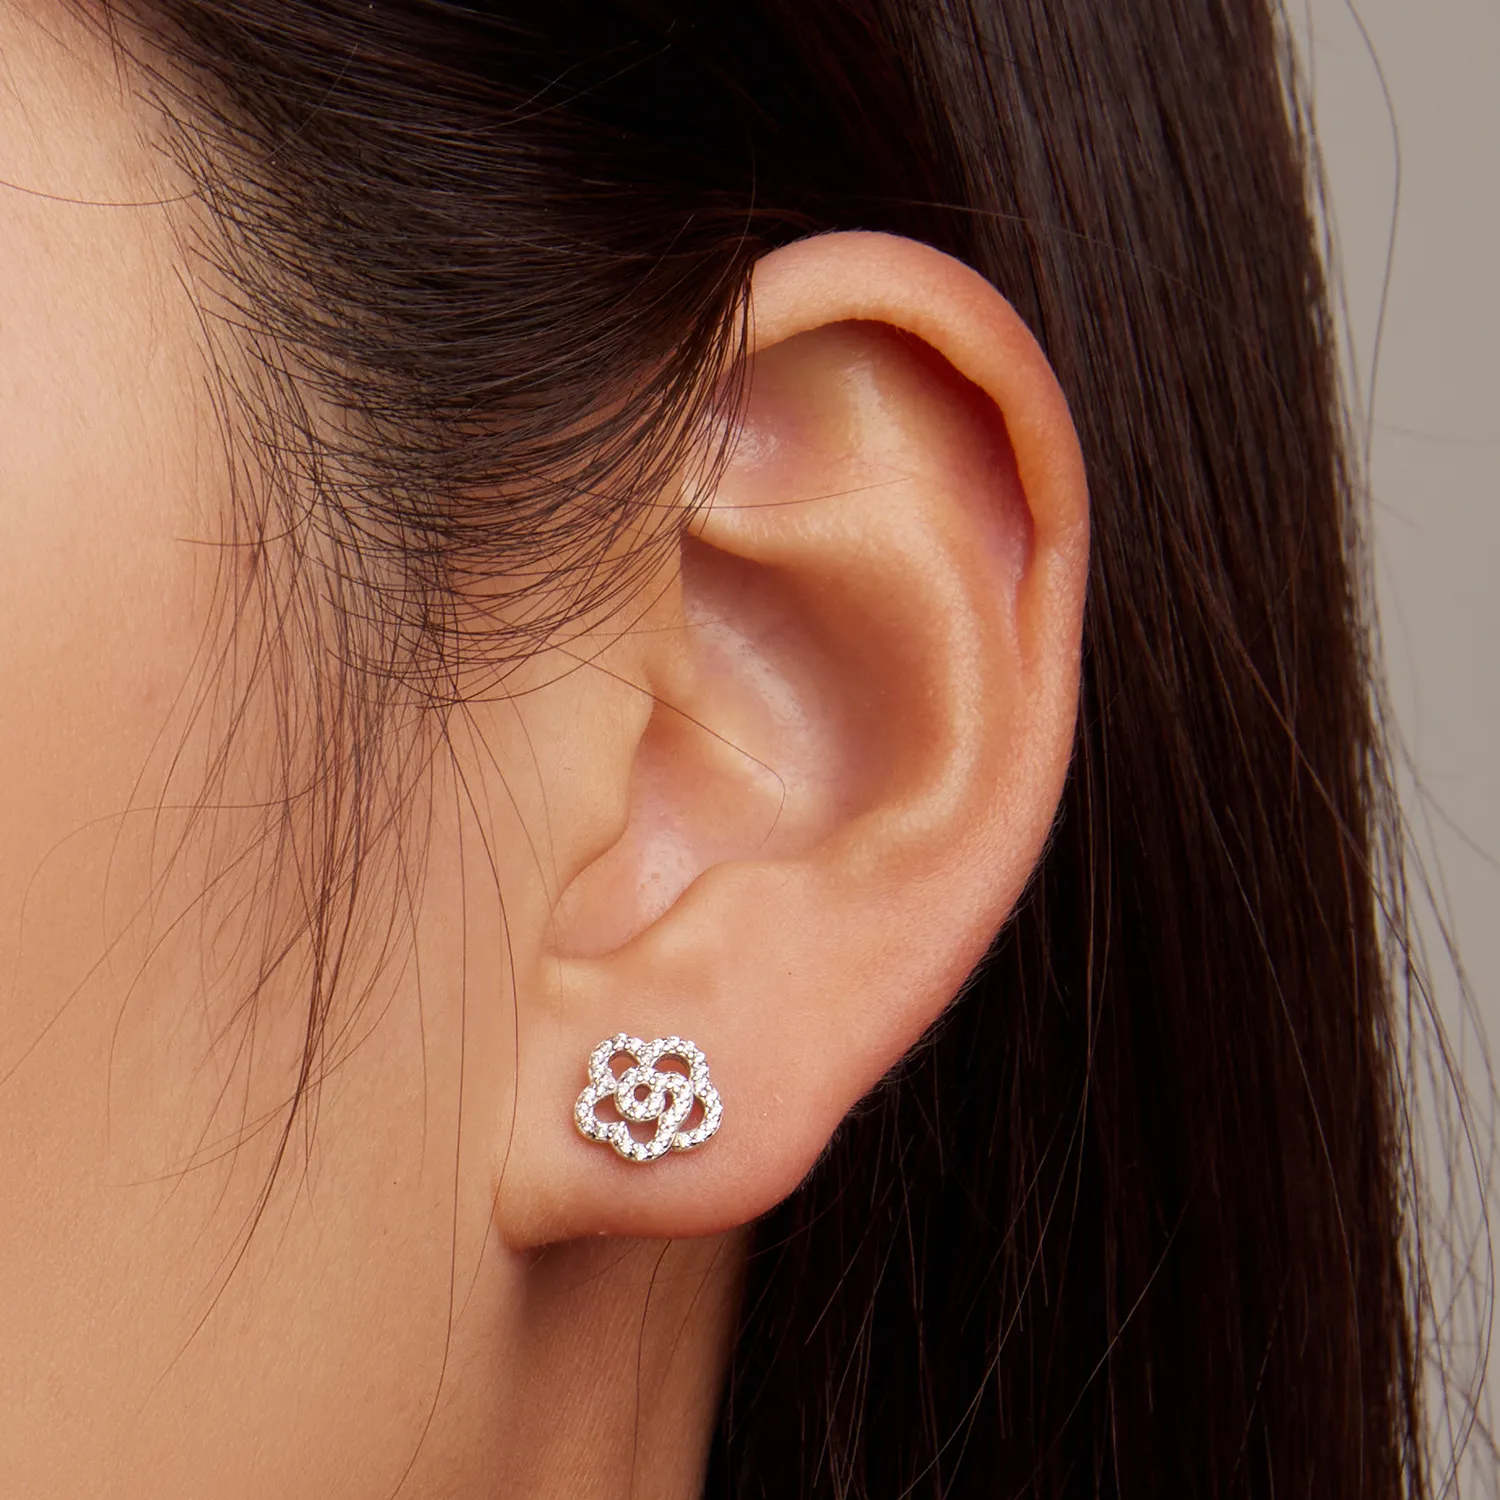 Pandora Style Roses Stud Earrings - BSE712